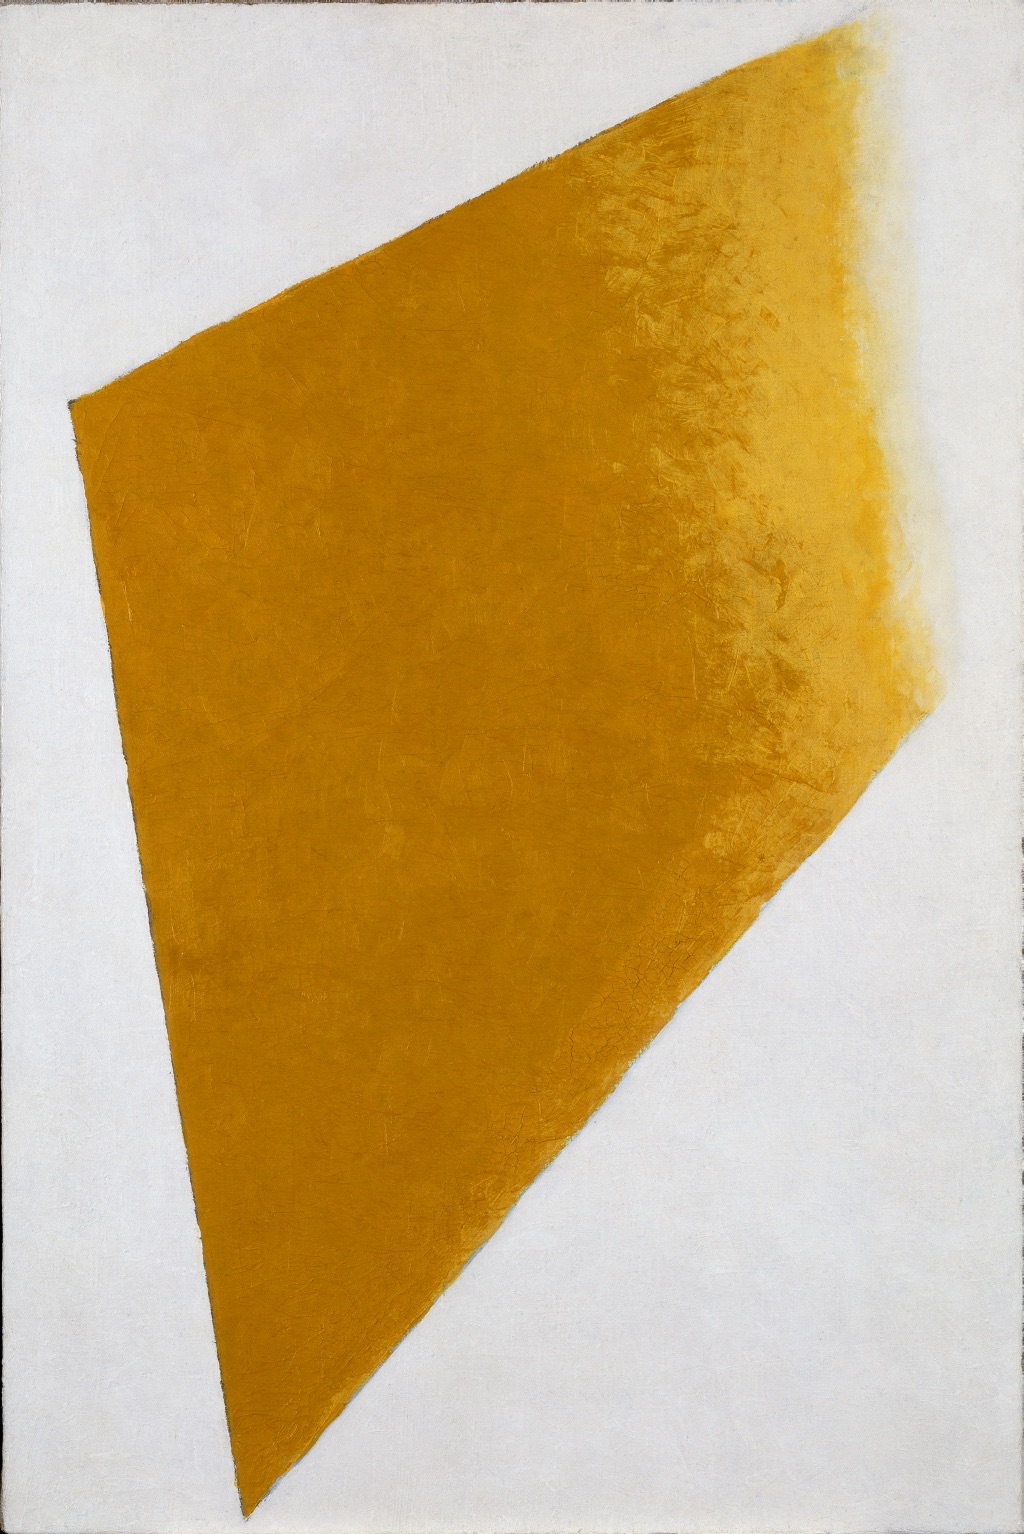 Plano Amarelo em Dissolução by Kazimir Malevich - 1917-1918 - 109 x 73.5 x 4.5 cm 